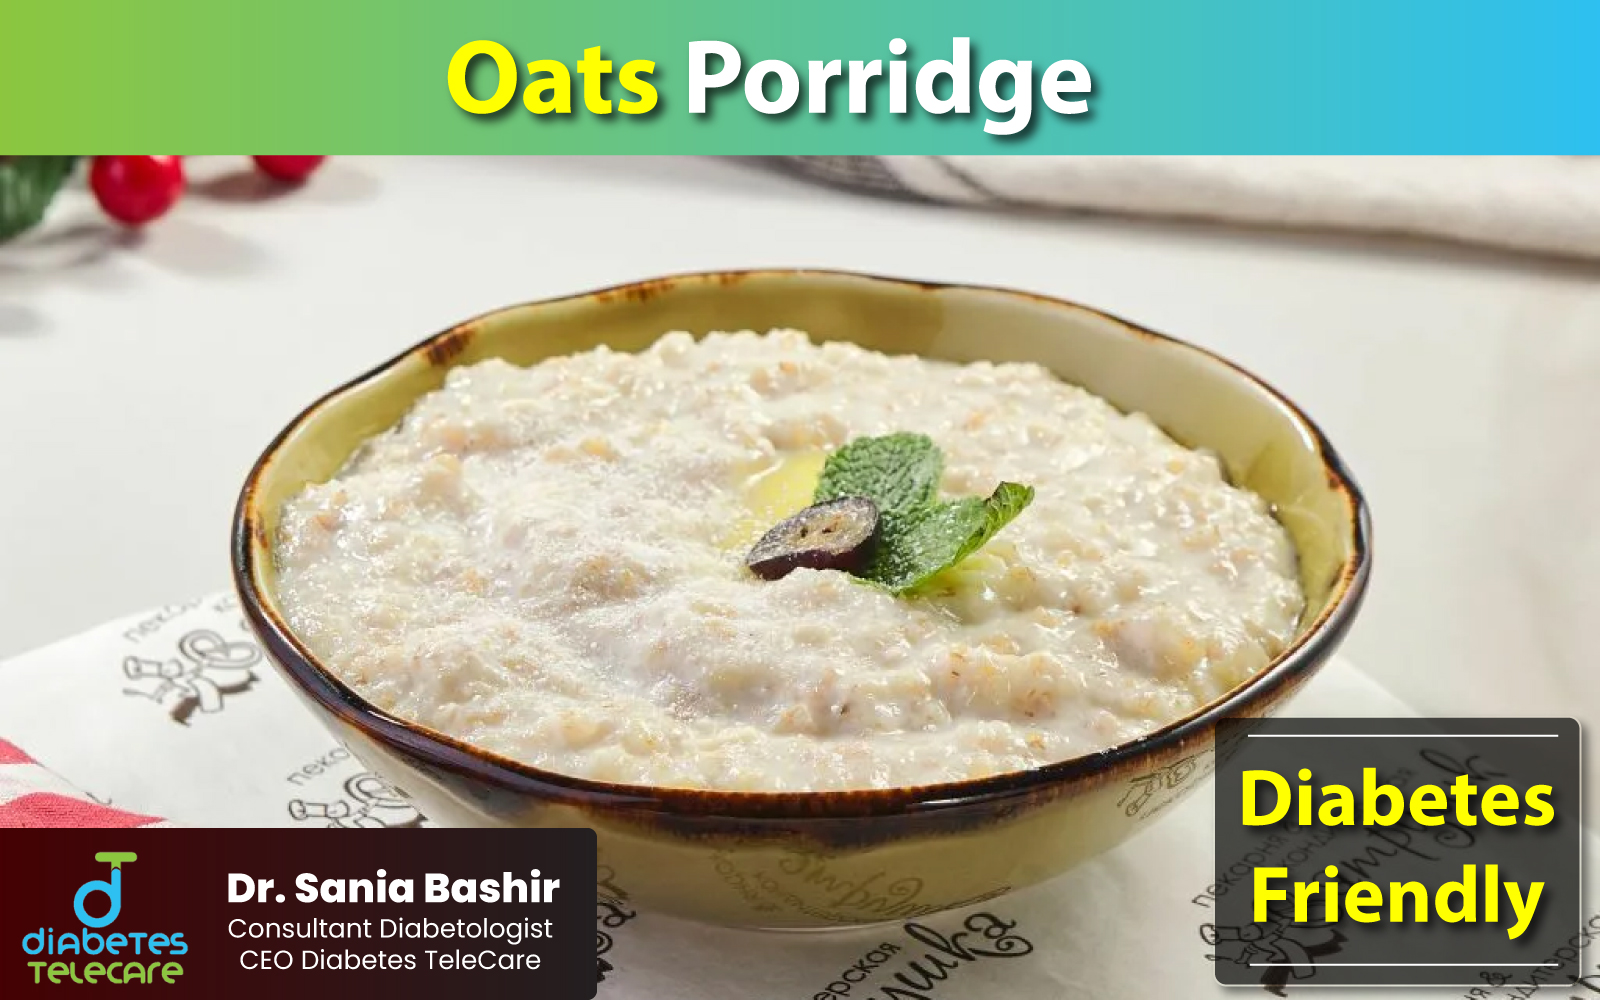 oats porridge recipe